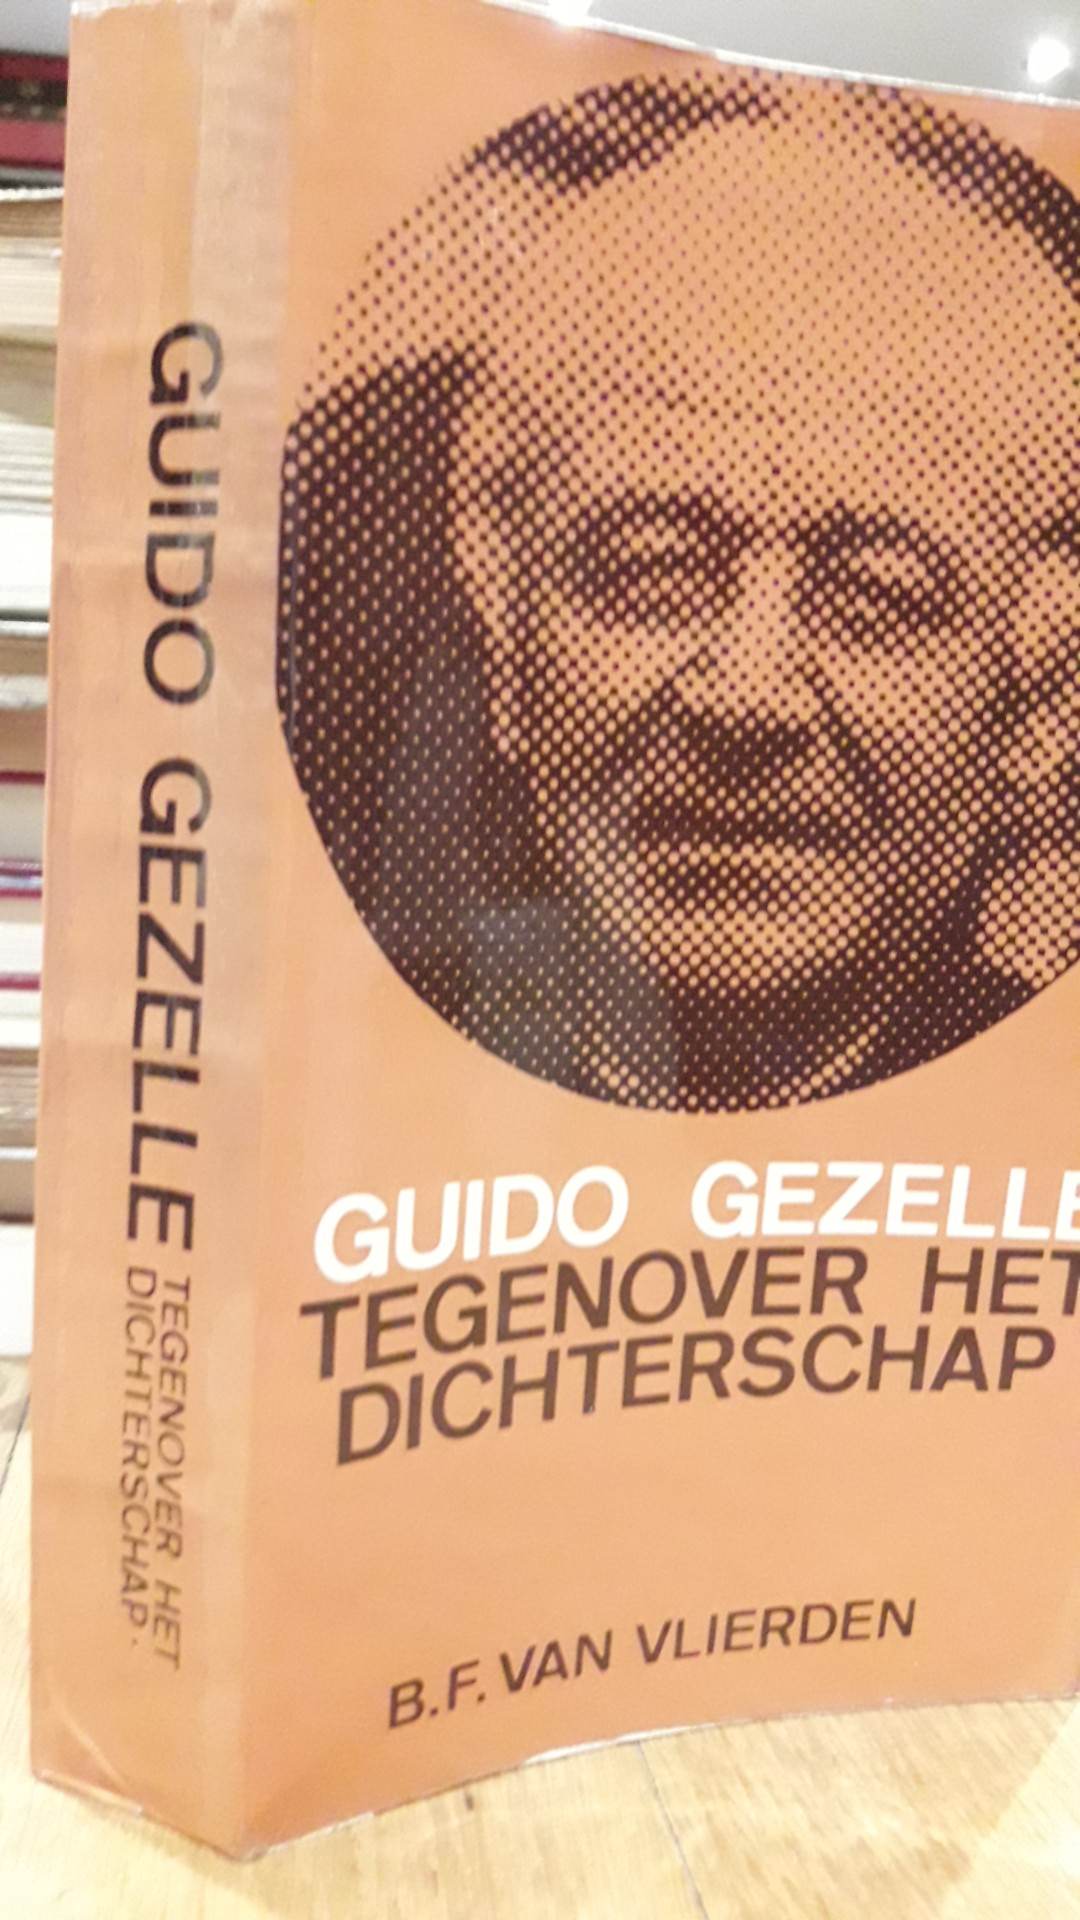 Guido Gezelle - Tegenover het dichterschap - B.F. Van Vlierden / 376 blz